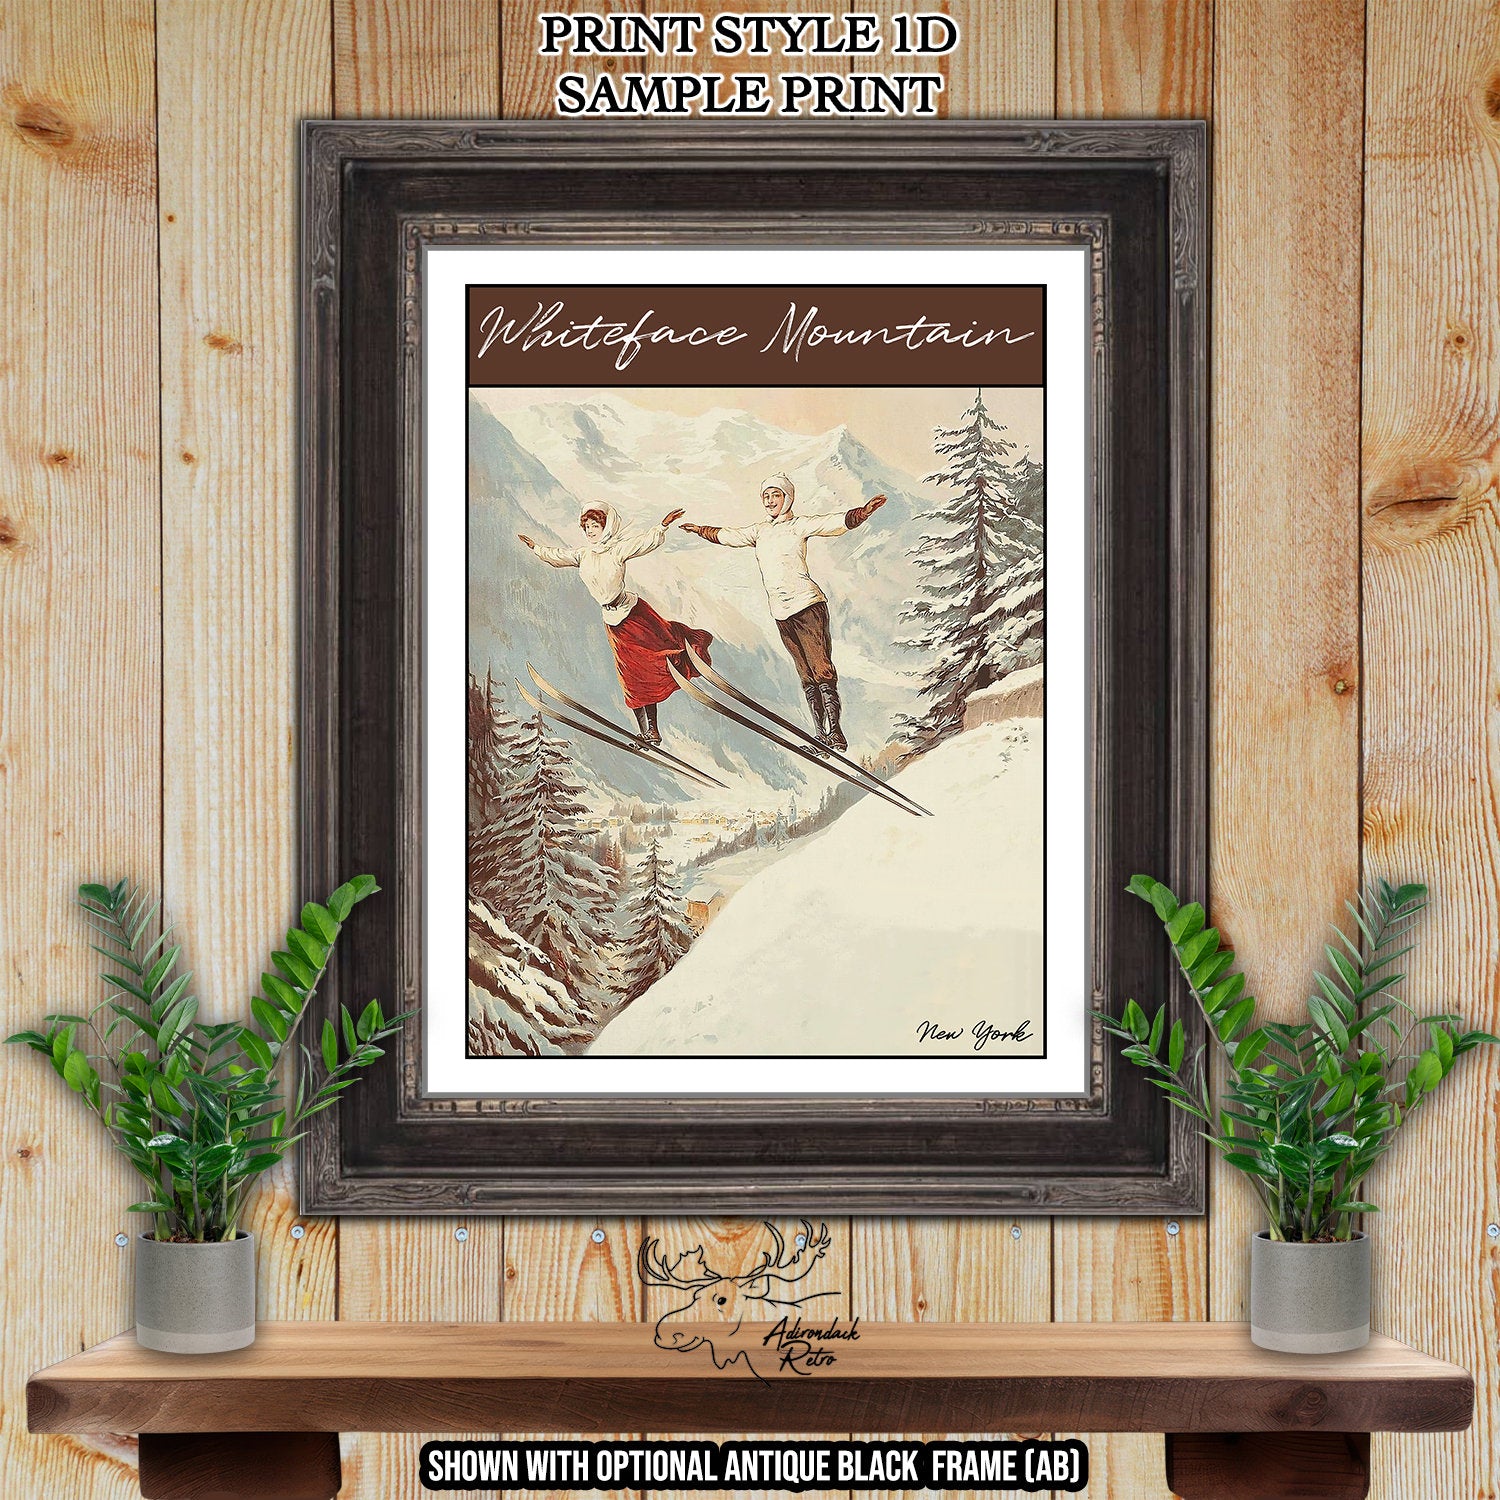 Badger Pass California Retro Ski Resort Print